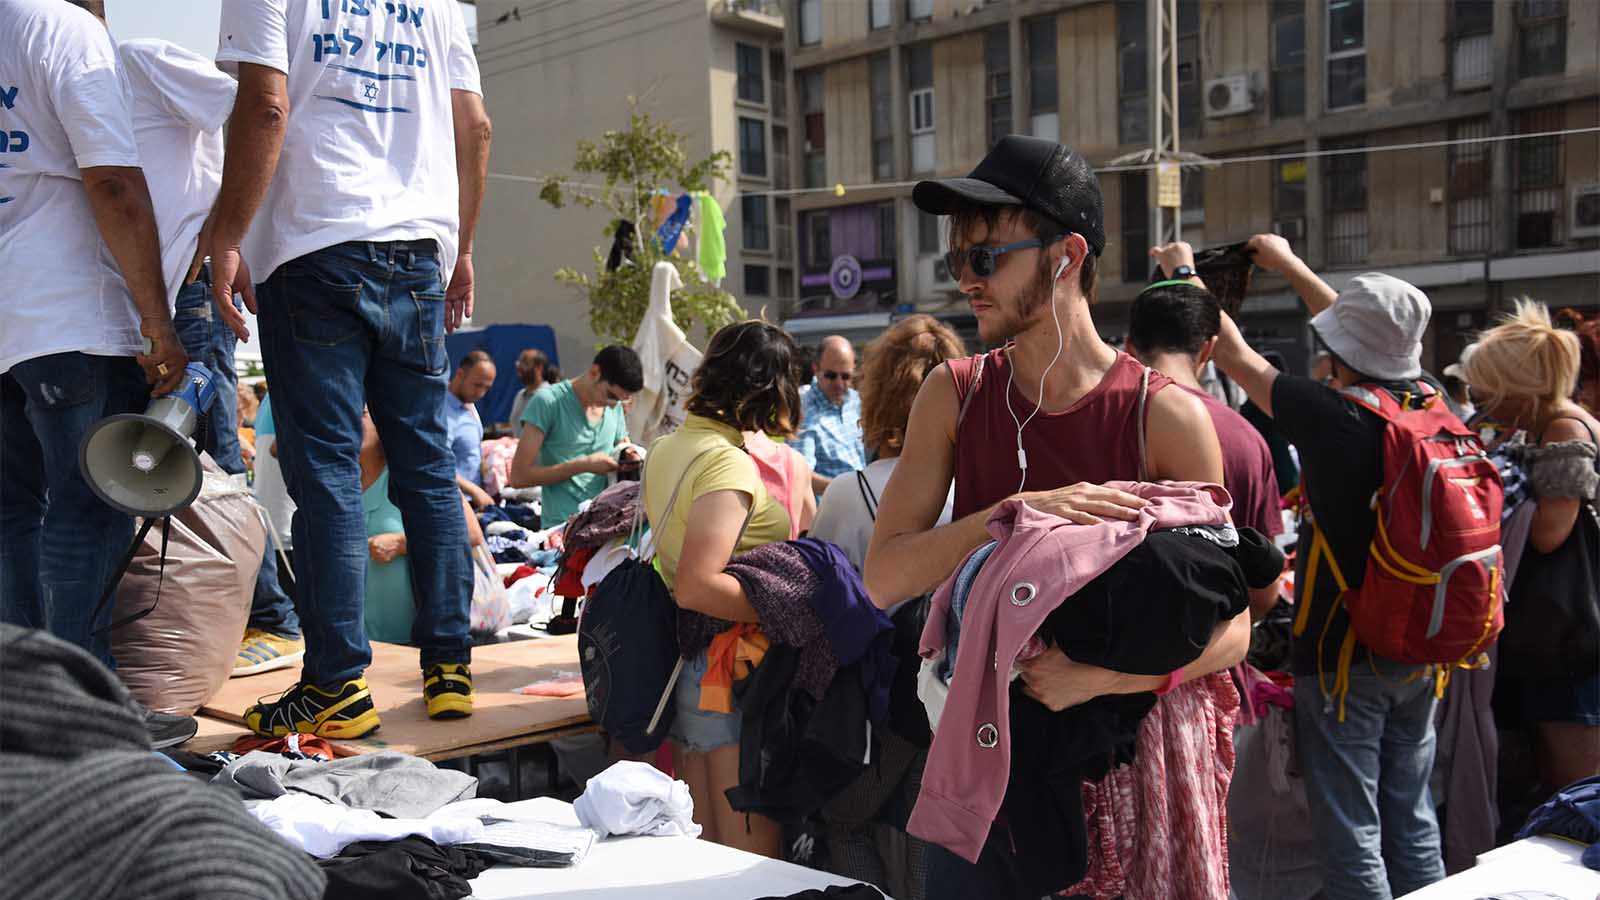 הפגנת התנועה לעידוד האופנה בישראל במחאה על מדיניות האוצר. 7 ביוני (צילום: מור הופרט)